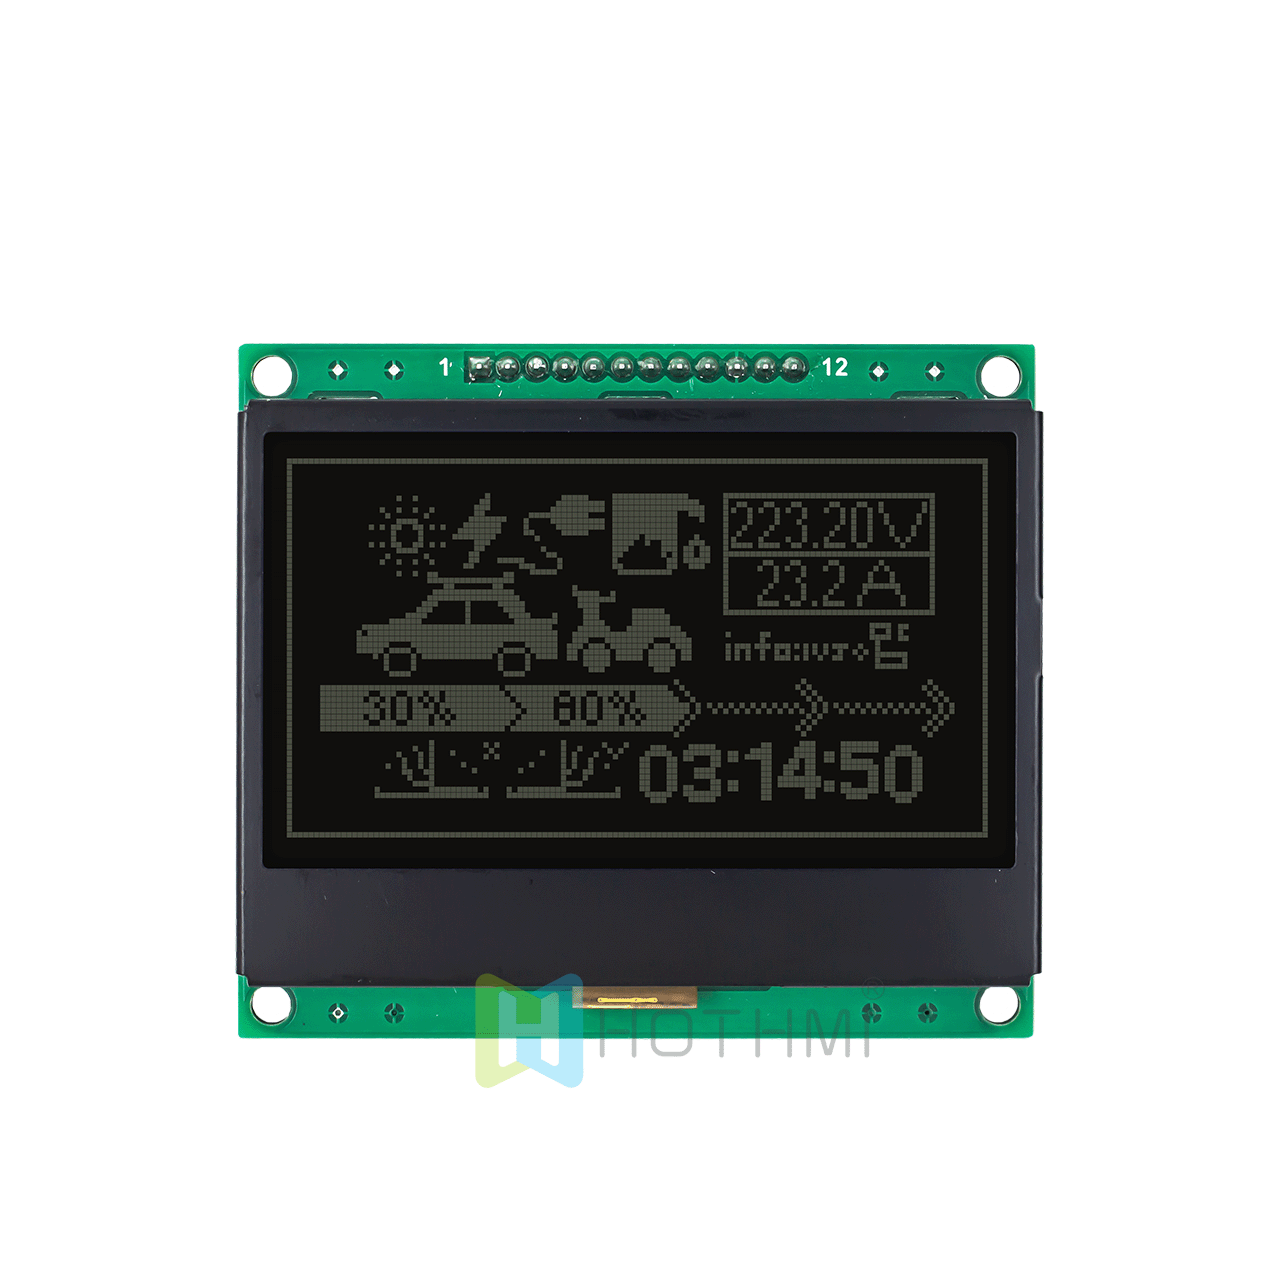 3 英寸 128x64 图形 LCD 显示模块 | 128x64 图形 LCD 模块 | SPI 接口 | 黑底白字| DFSTN 负片 | Adruino